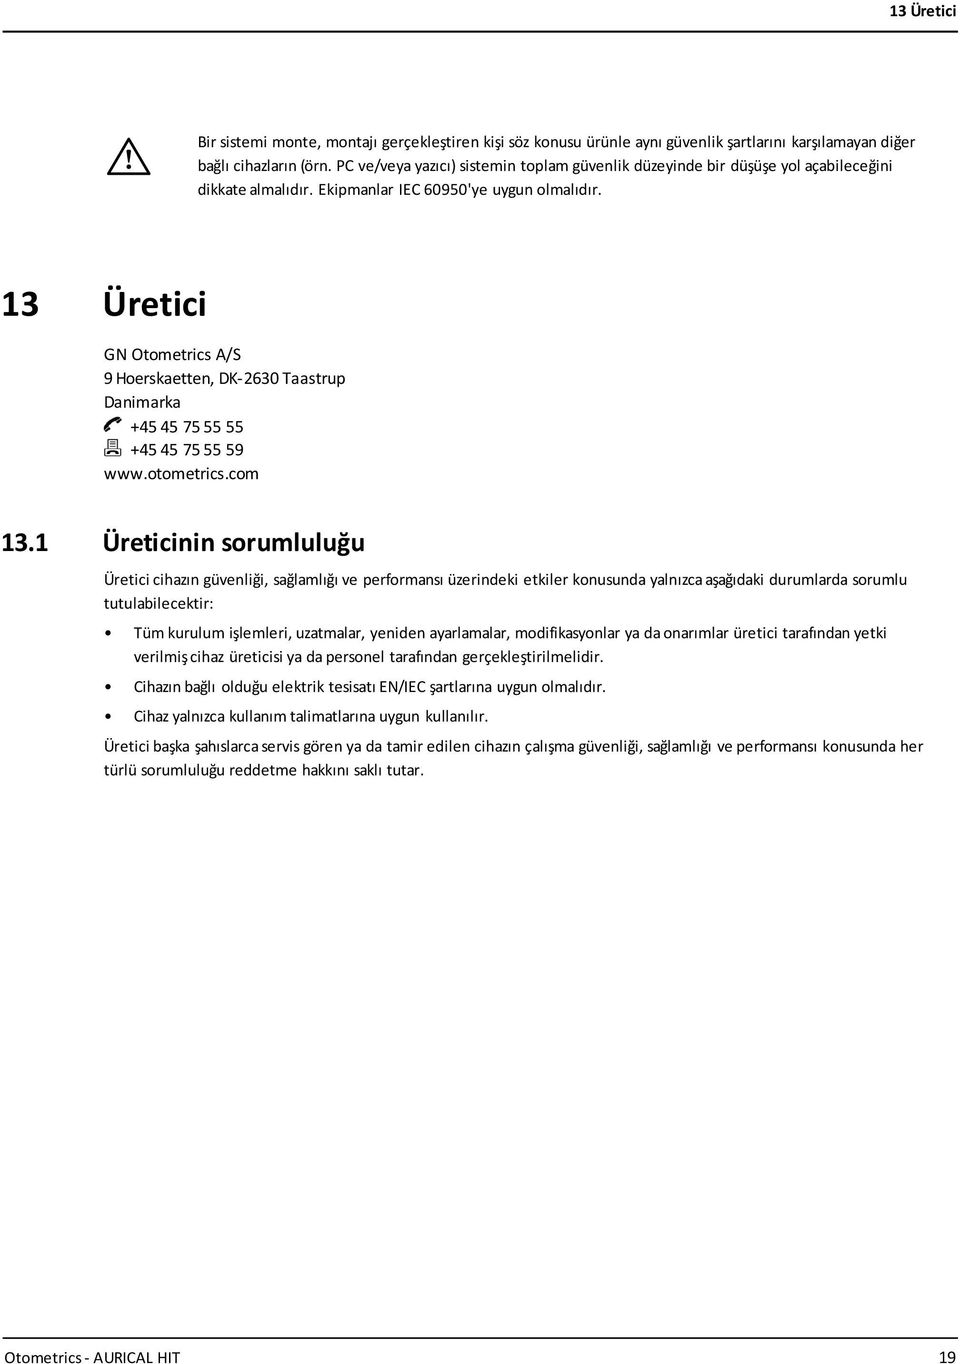 13 Üretici GN Otometrics A/S 9 Hoerskaetten, DK-2630 Taastrup Danimarka +45 45 75 55 55 +45 45 75 55 59 www.otometrics.com 13.